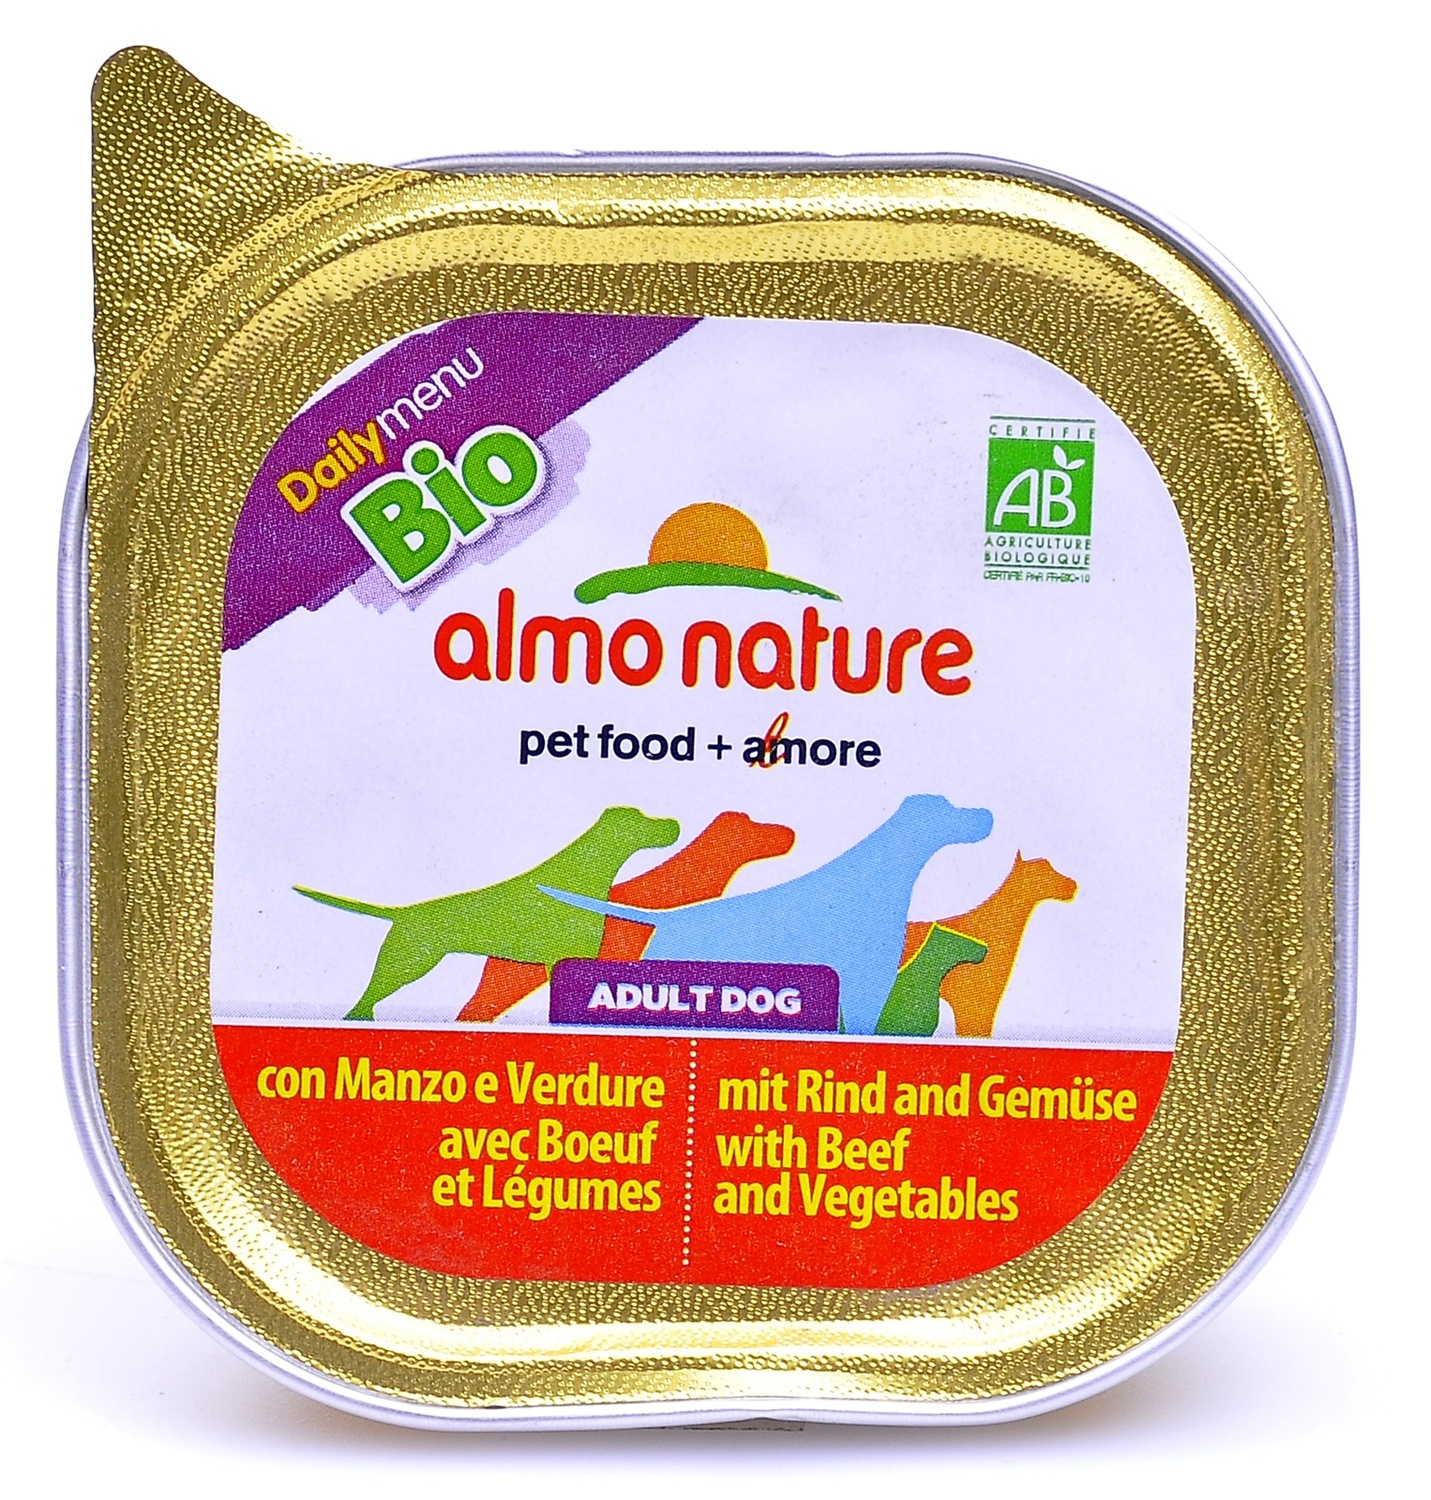 Almo nature (алмо натур) daIlymenu консервы для собак паштет с говядиной и овощами 32 шт по 100 гр&nbsp;